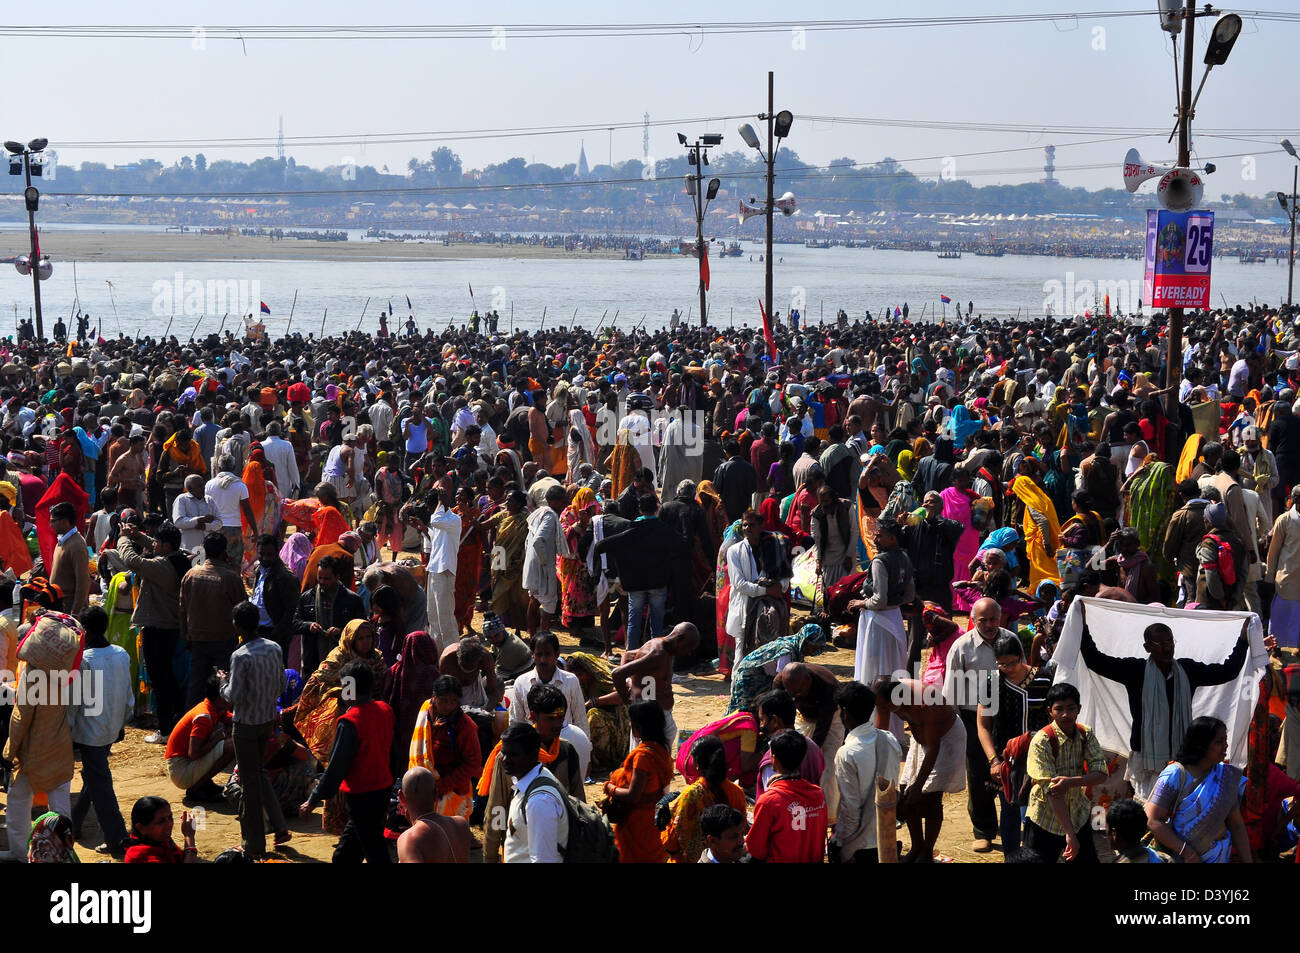 Millionen von hinduistischen Anhänger versammelten sich um am Ufer der Sangam Zusammenfluss des Flusses Ganges ein heiliges Bad zu nehmen. Stockfoto